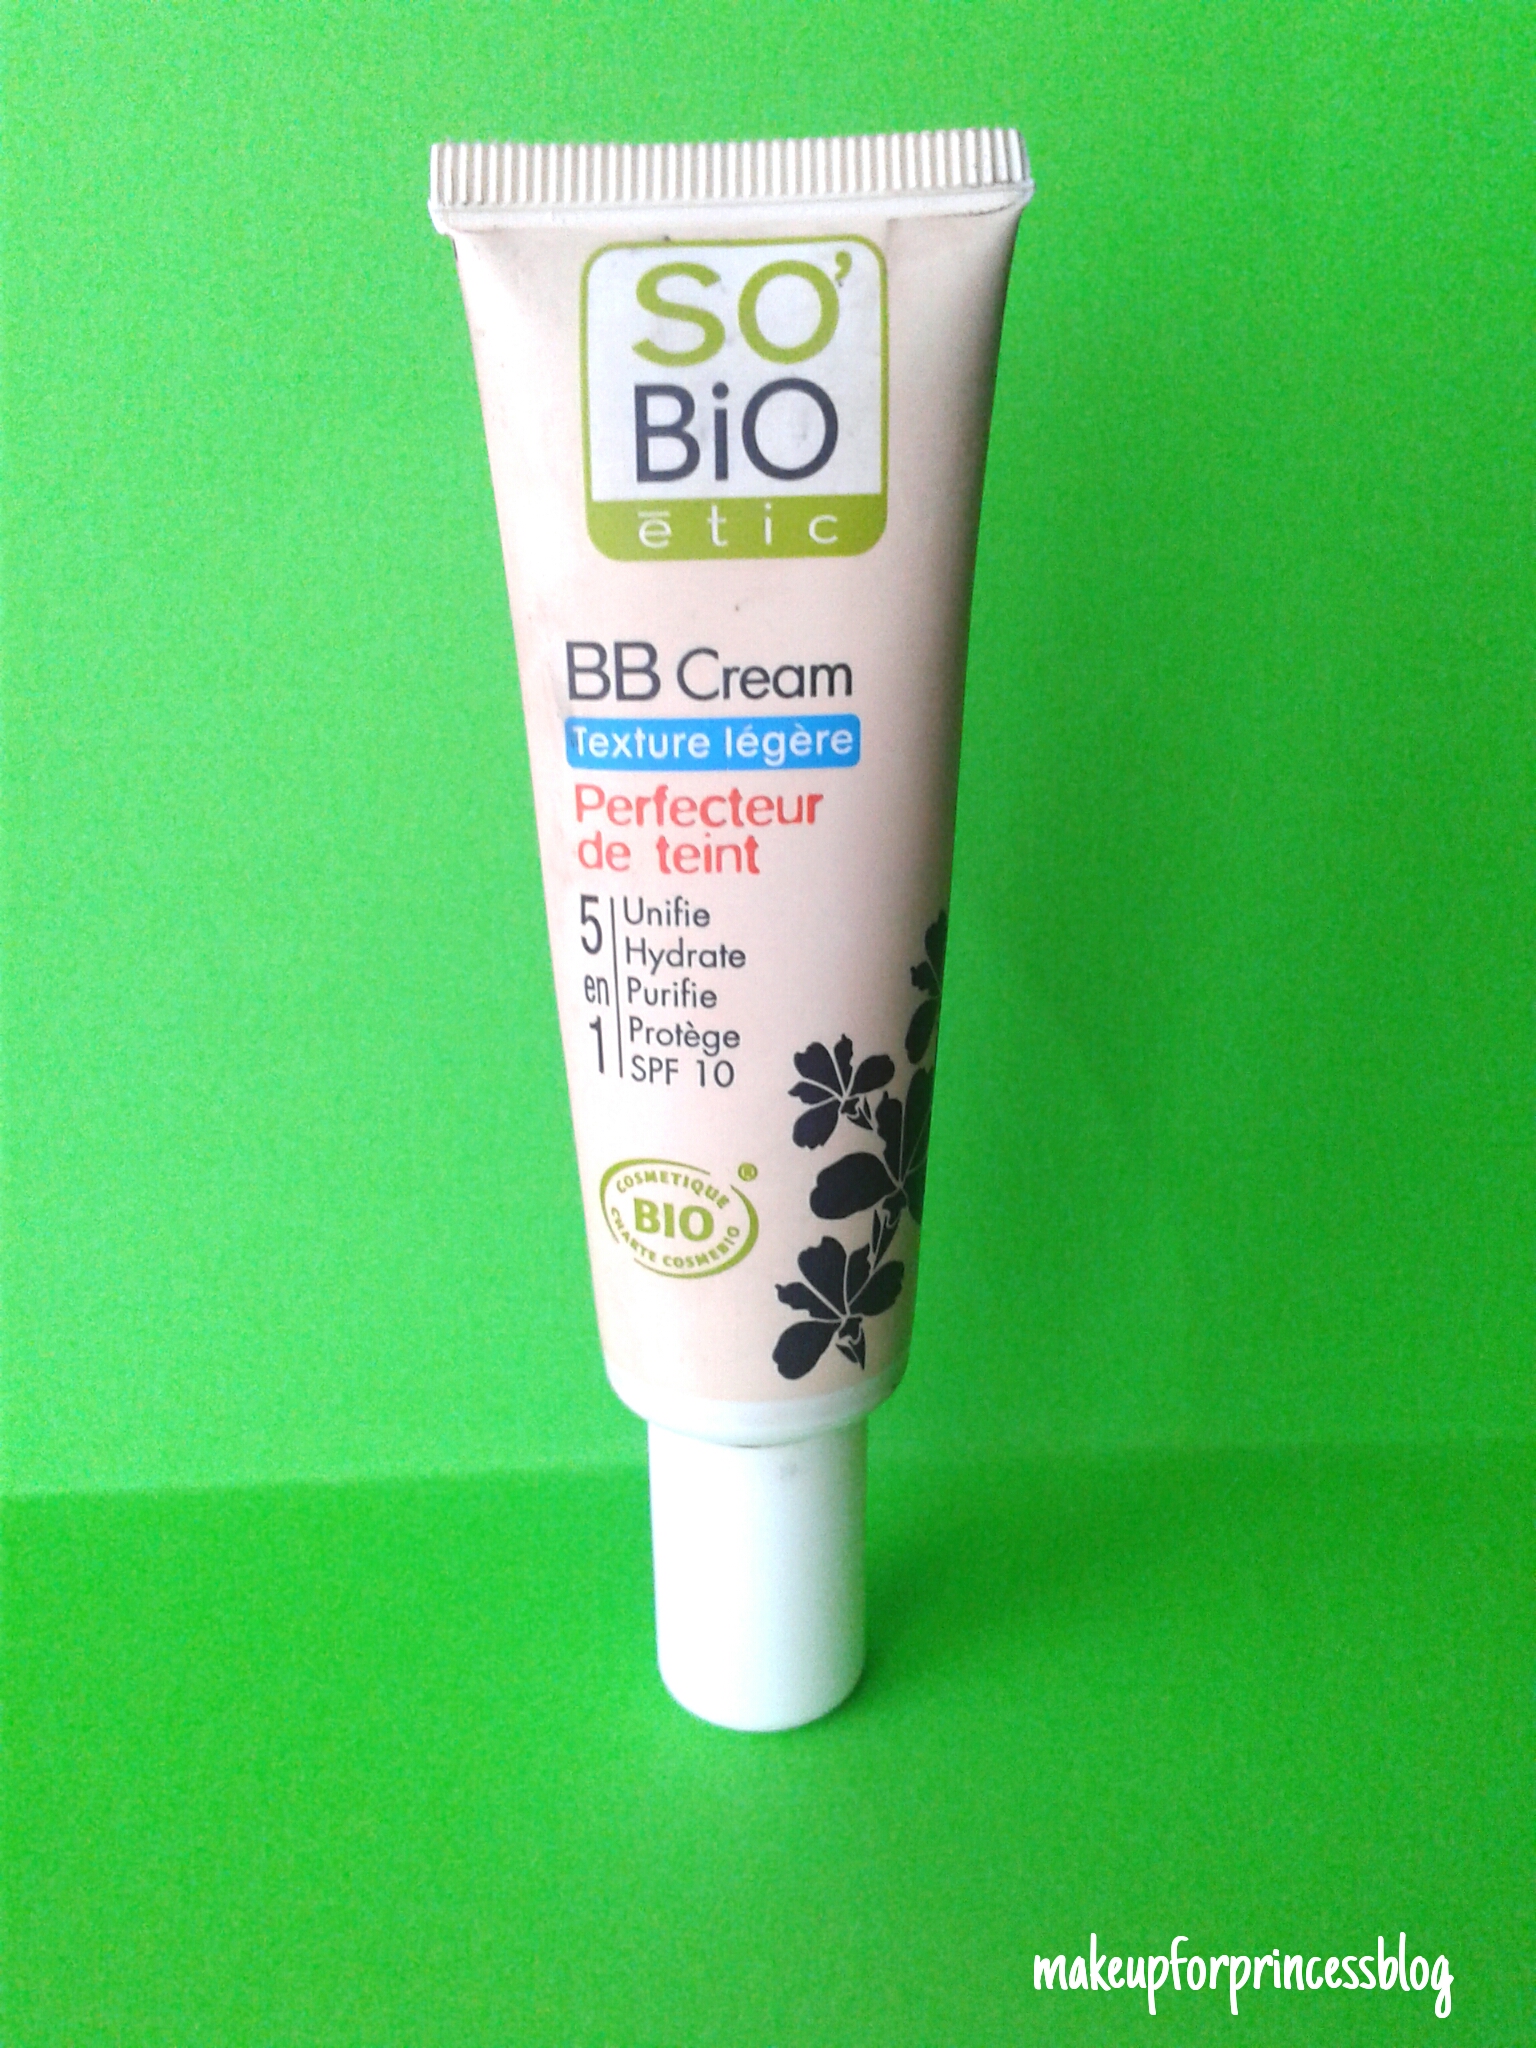 Bb cream texture leggera 01 Beige Nude - So Bio Etic 